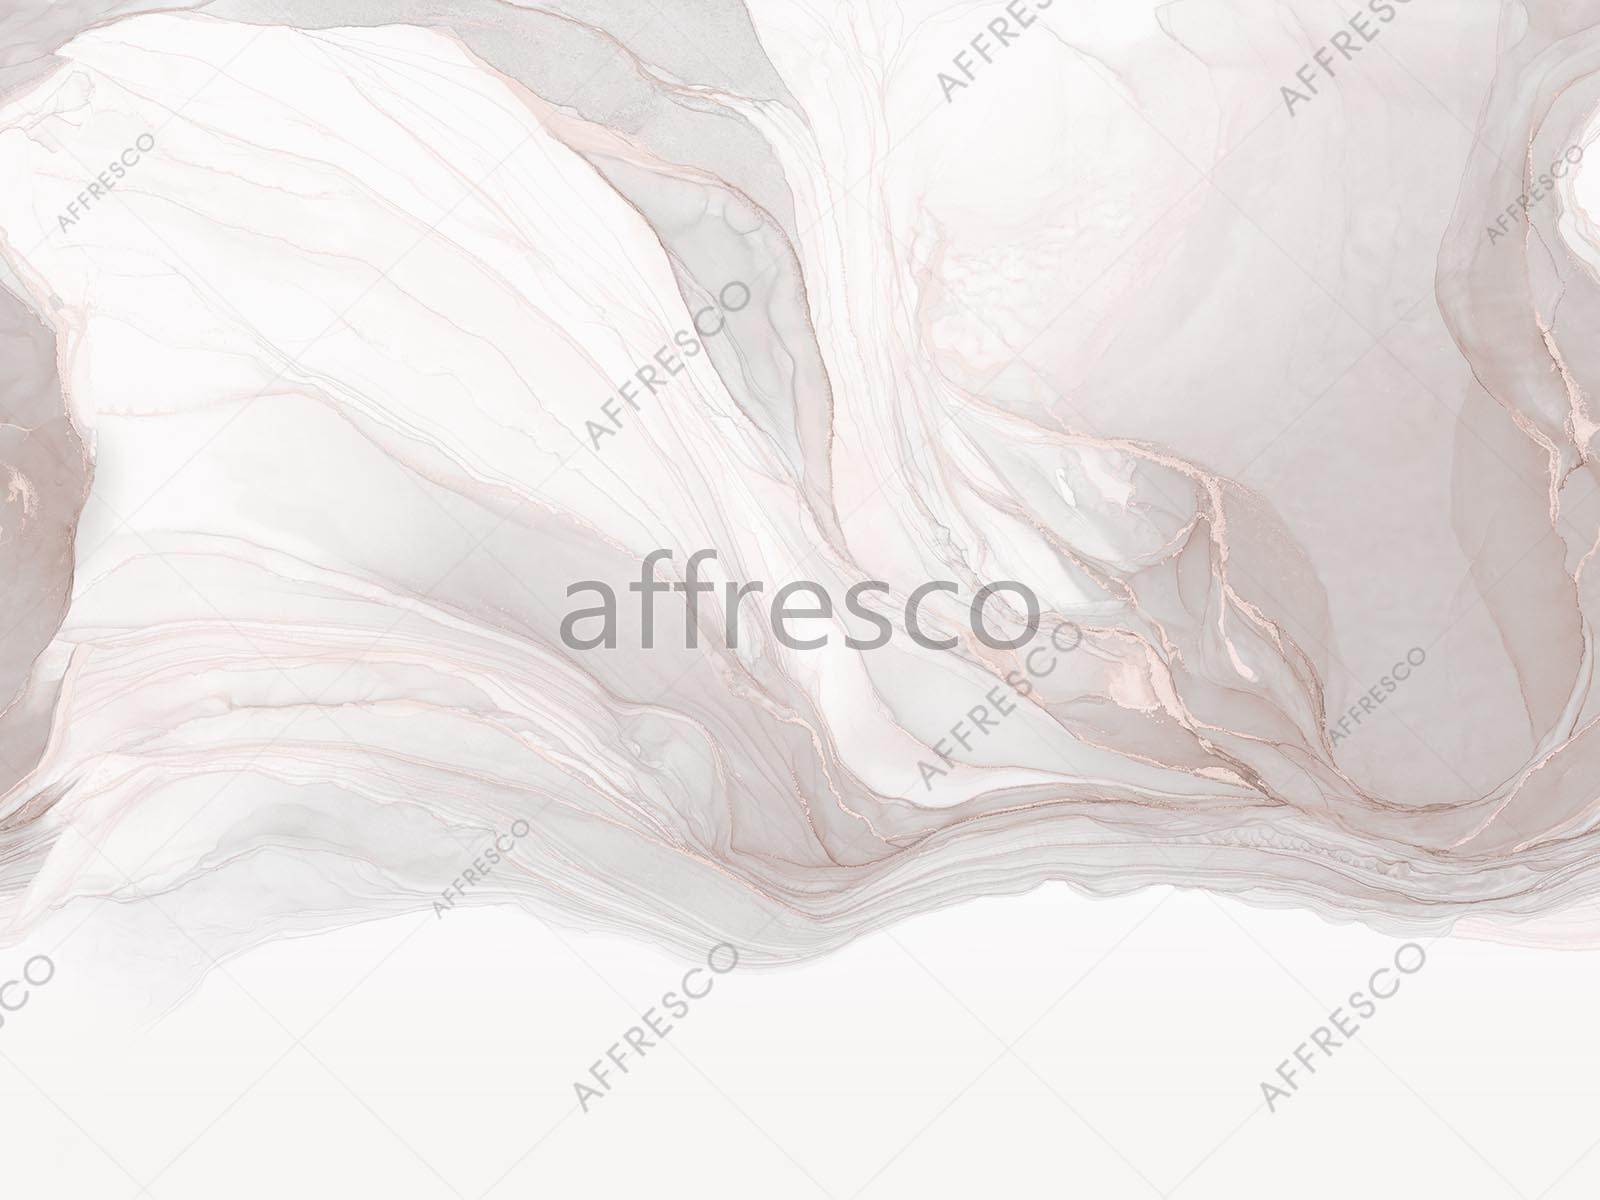 AF2107-COL3 | Emotion Art | Affresco Factory